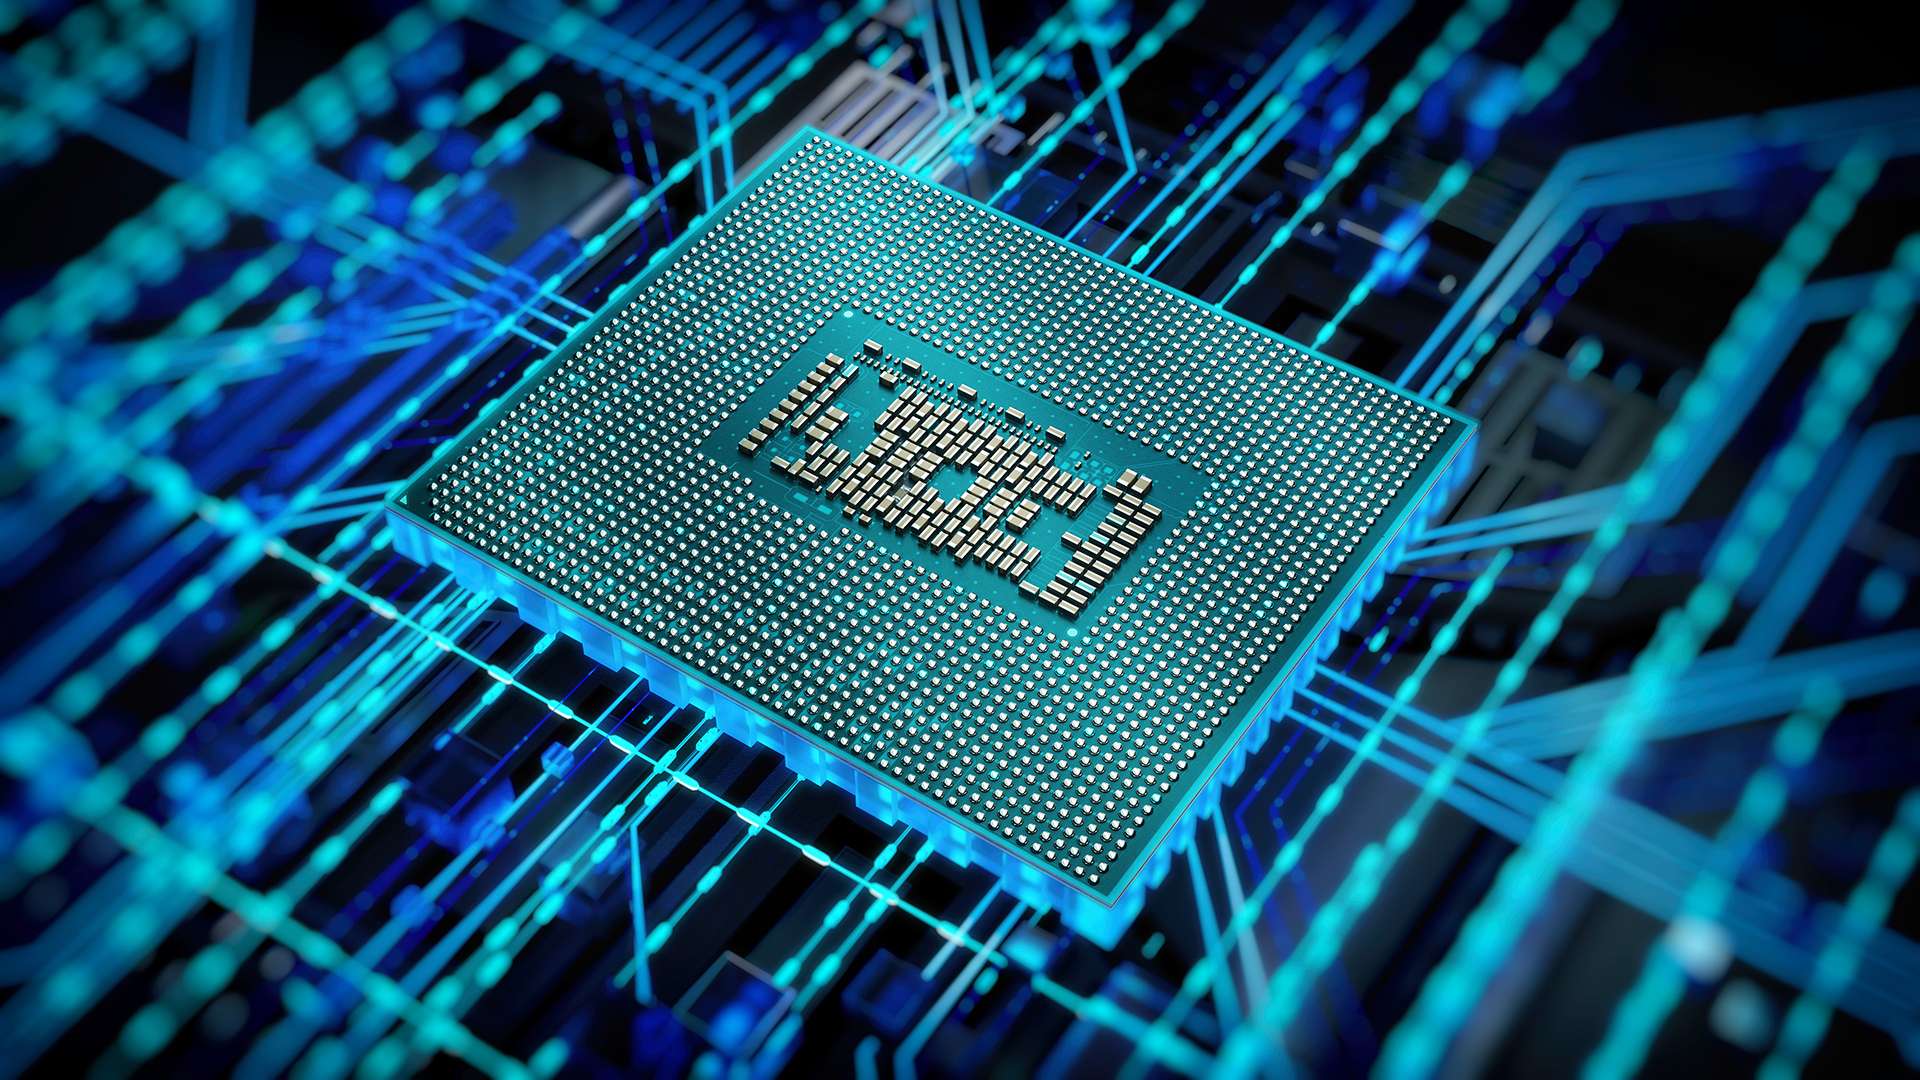 Intel Core HX thế hệ 12 ra mắt với vai trò là nền tảng máy trạm di động hàng đầu thế giới